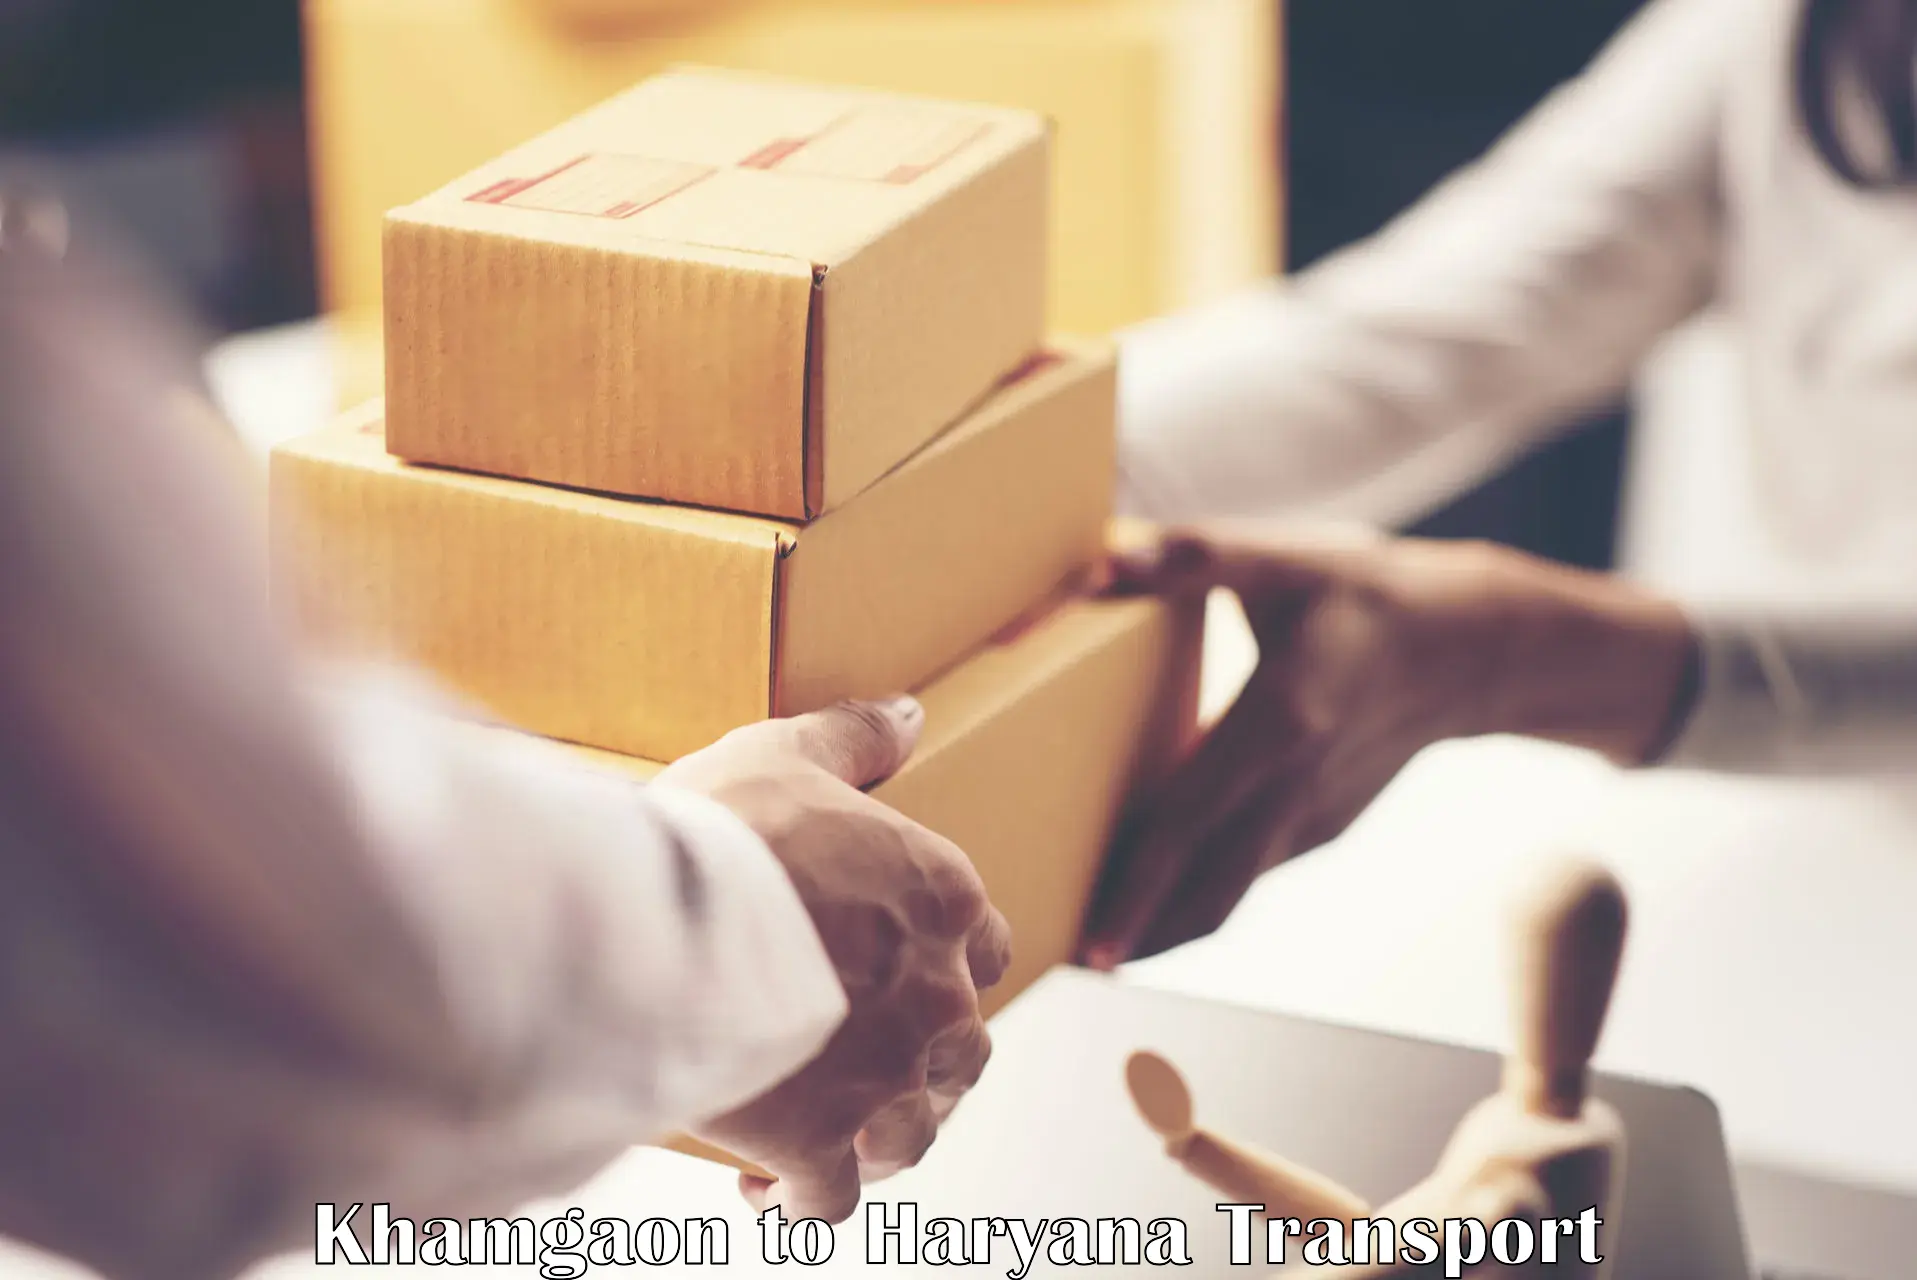 Cargo transportation services Khamgaon to Hansi